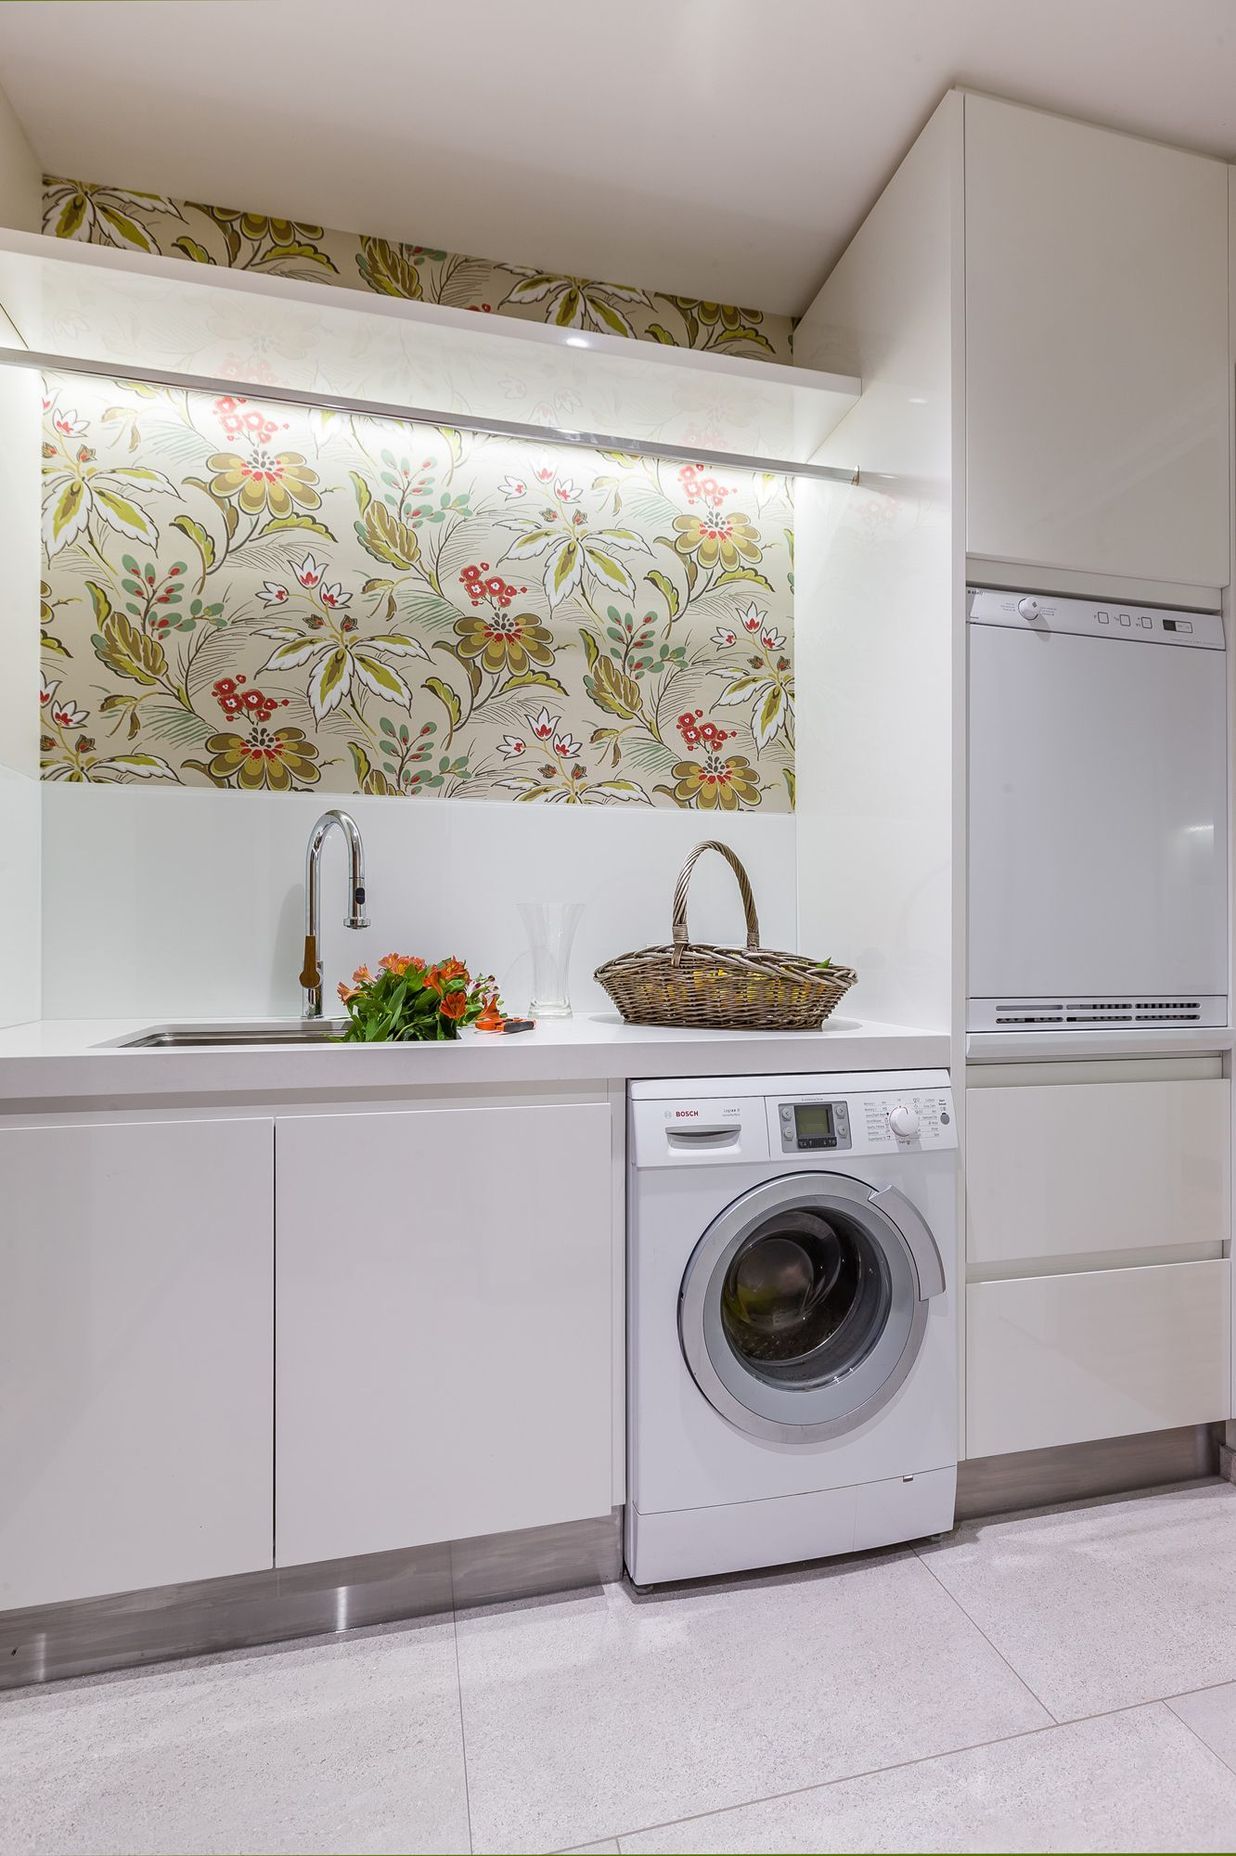 Oratia Kitchen, Scullery, Laundry and Interior Design